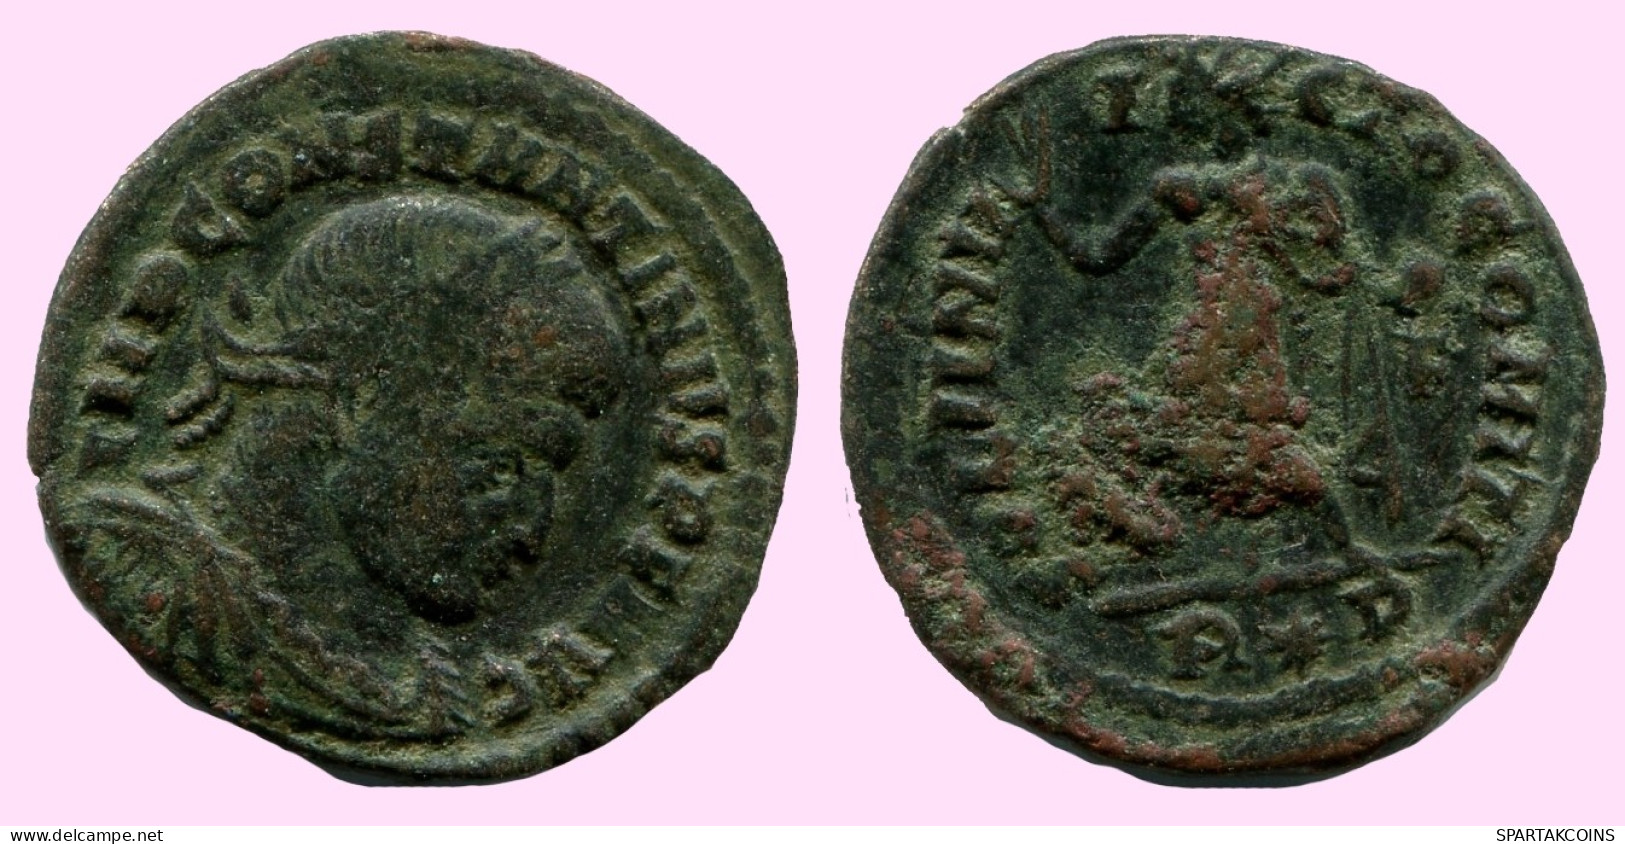 CONSTANTINE I Authentische Antike RÖMISCHEN KAISERZEIT Münze #ANC12242.12.D.A - El Imperio Christiano (307 / 363)